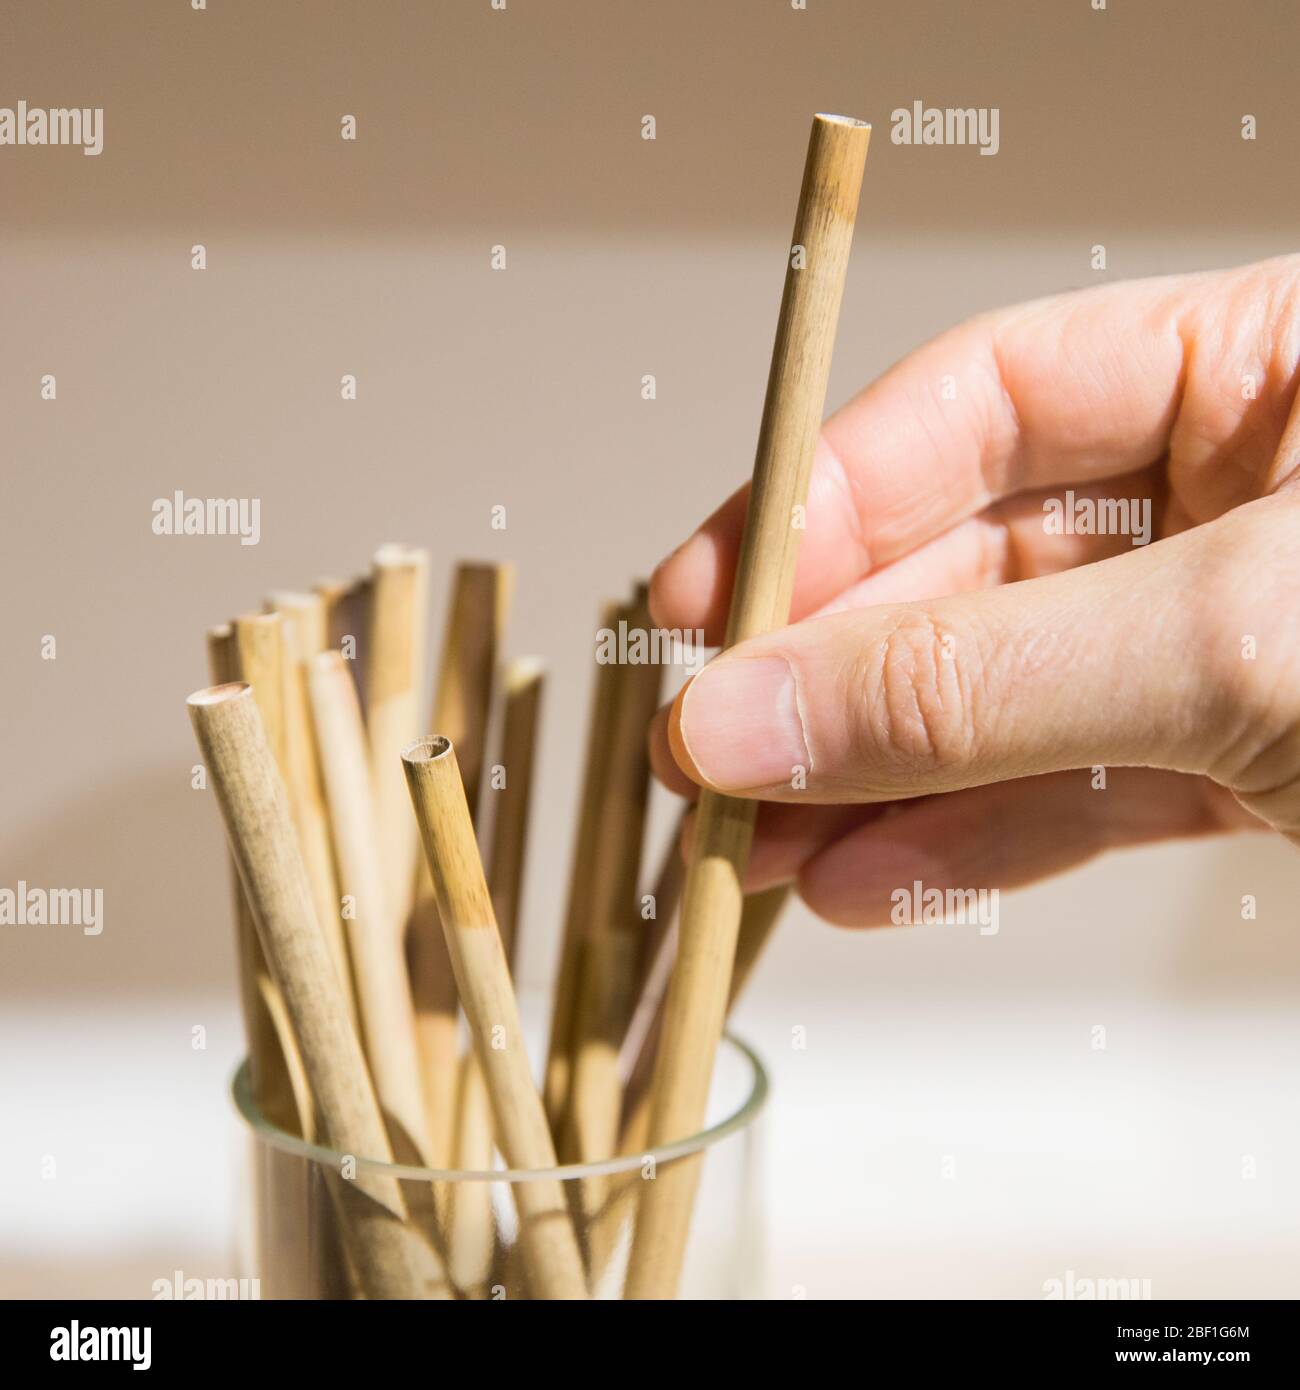 Remplacement des pailles en plastique. Main homme tenant/touchant la paille réutilisable de bambou écologique biodégradable, sélectif doux foyer. Zéro déchet, pas de plasti Banque D'Images